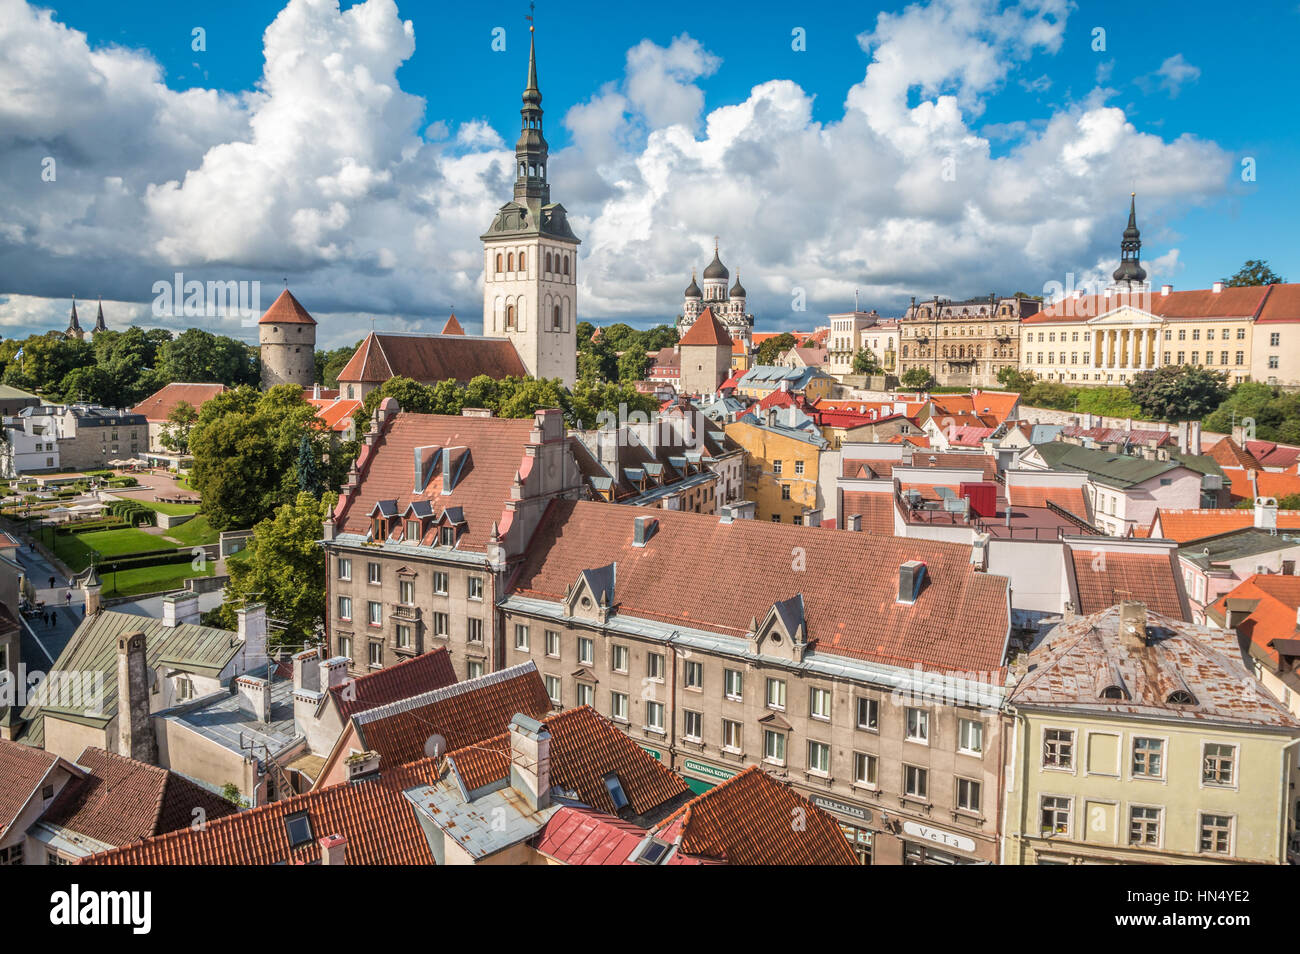 Tallinn in Estonia Stock Photo